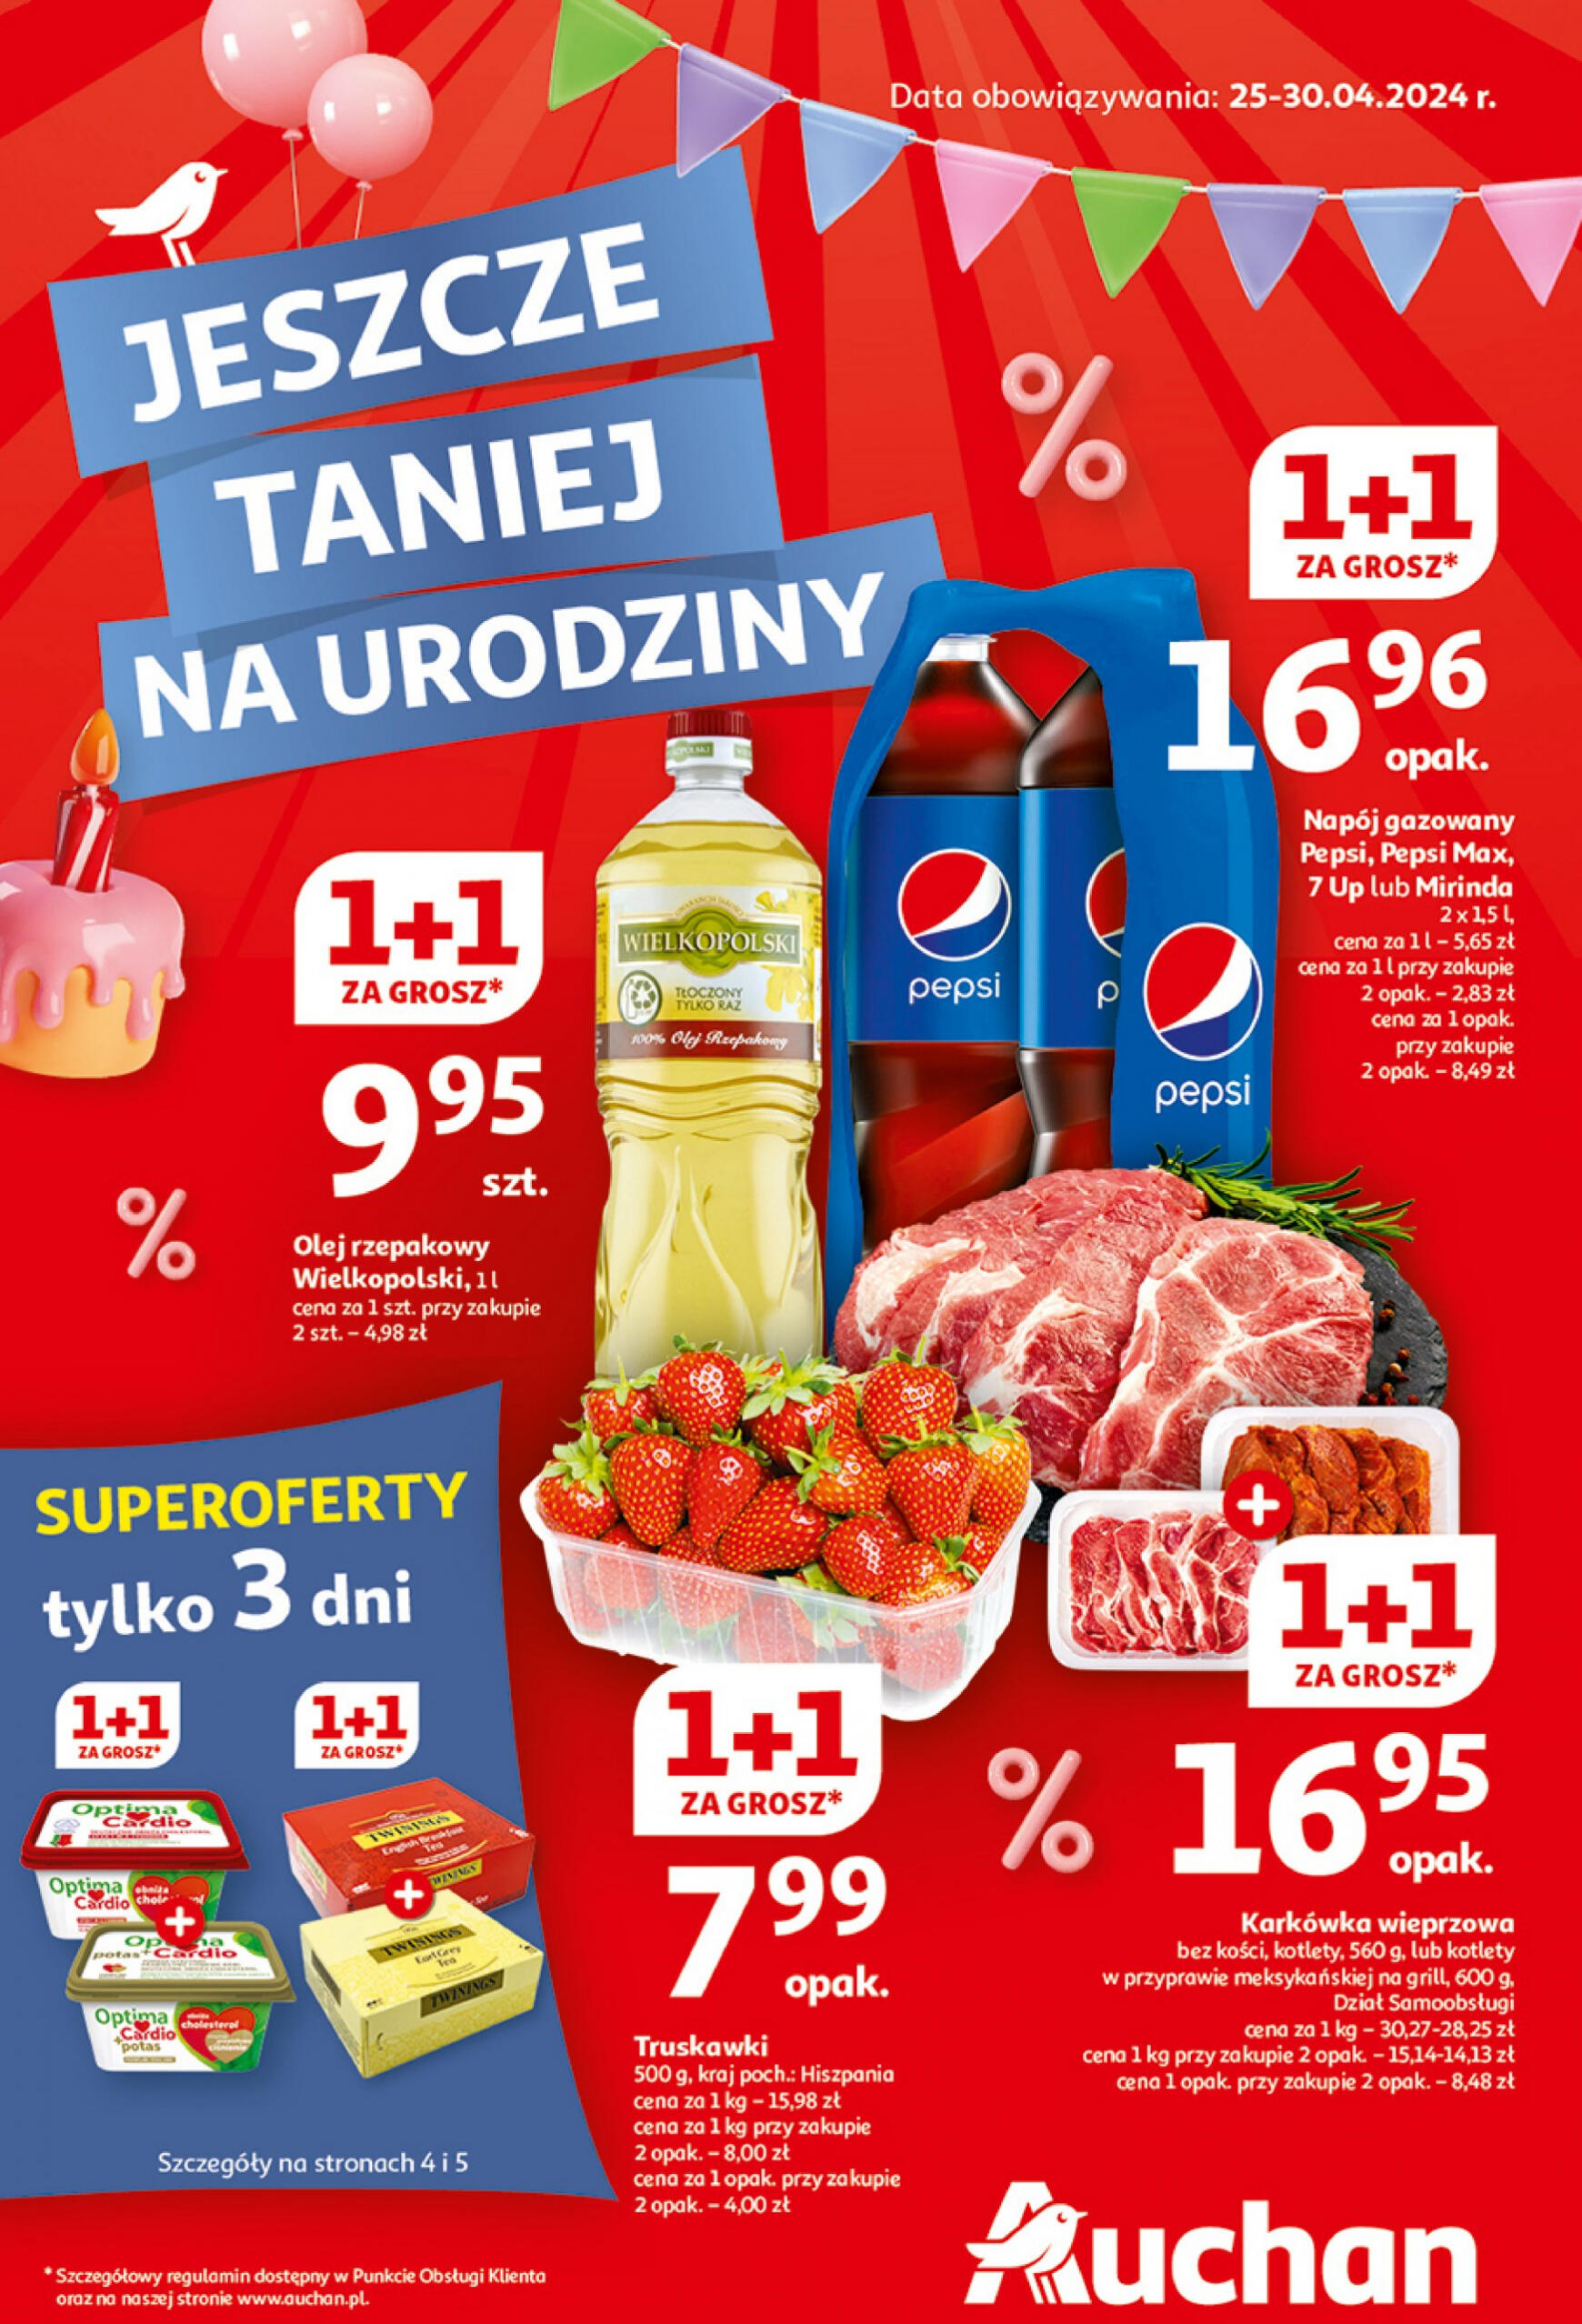 auchan - Hipermarket Auchan - Gazetka Jeszcze taniej na urodziny gazetka aktualna ważna od 25.04. - 30.04. - page: 1